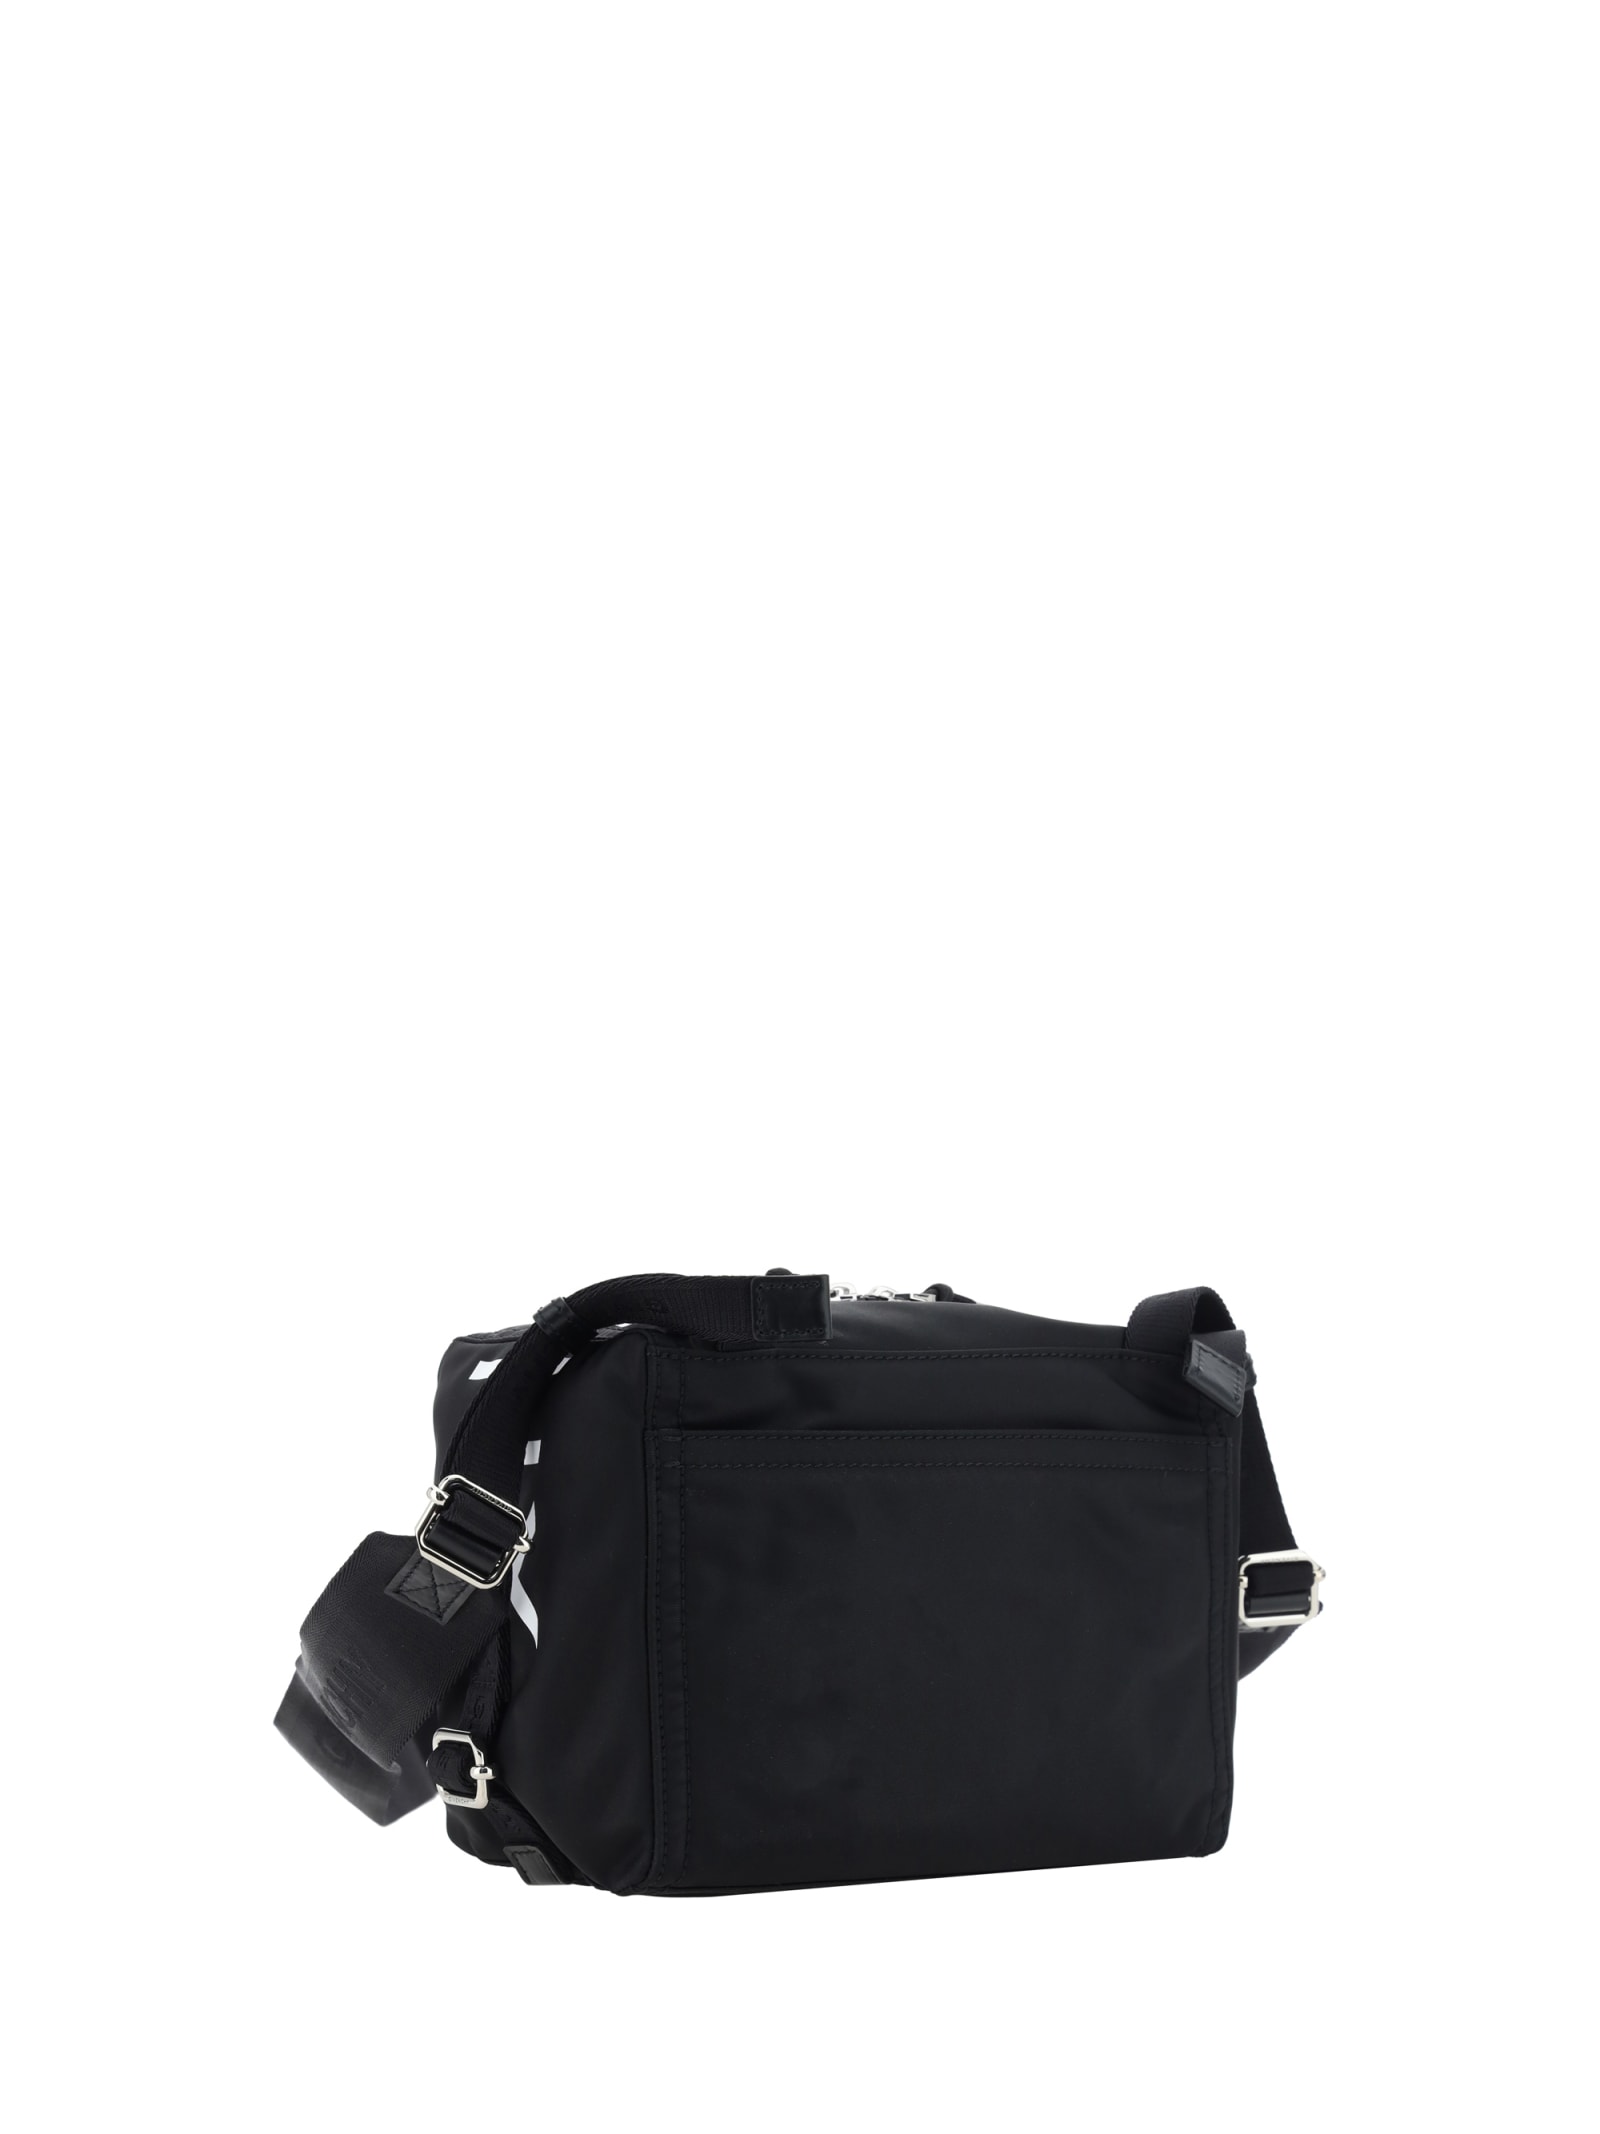 Shop Givenchy Pandora Shoulder Bag In Black/white